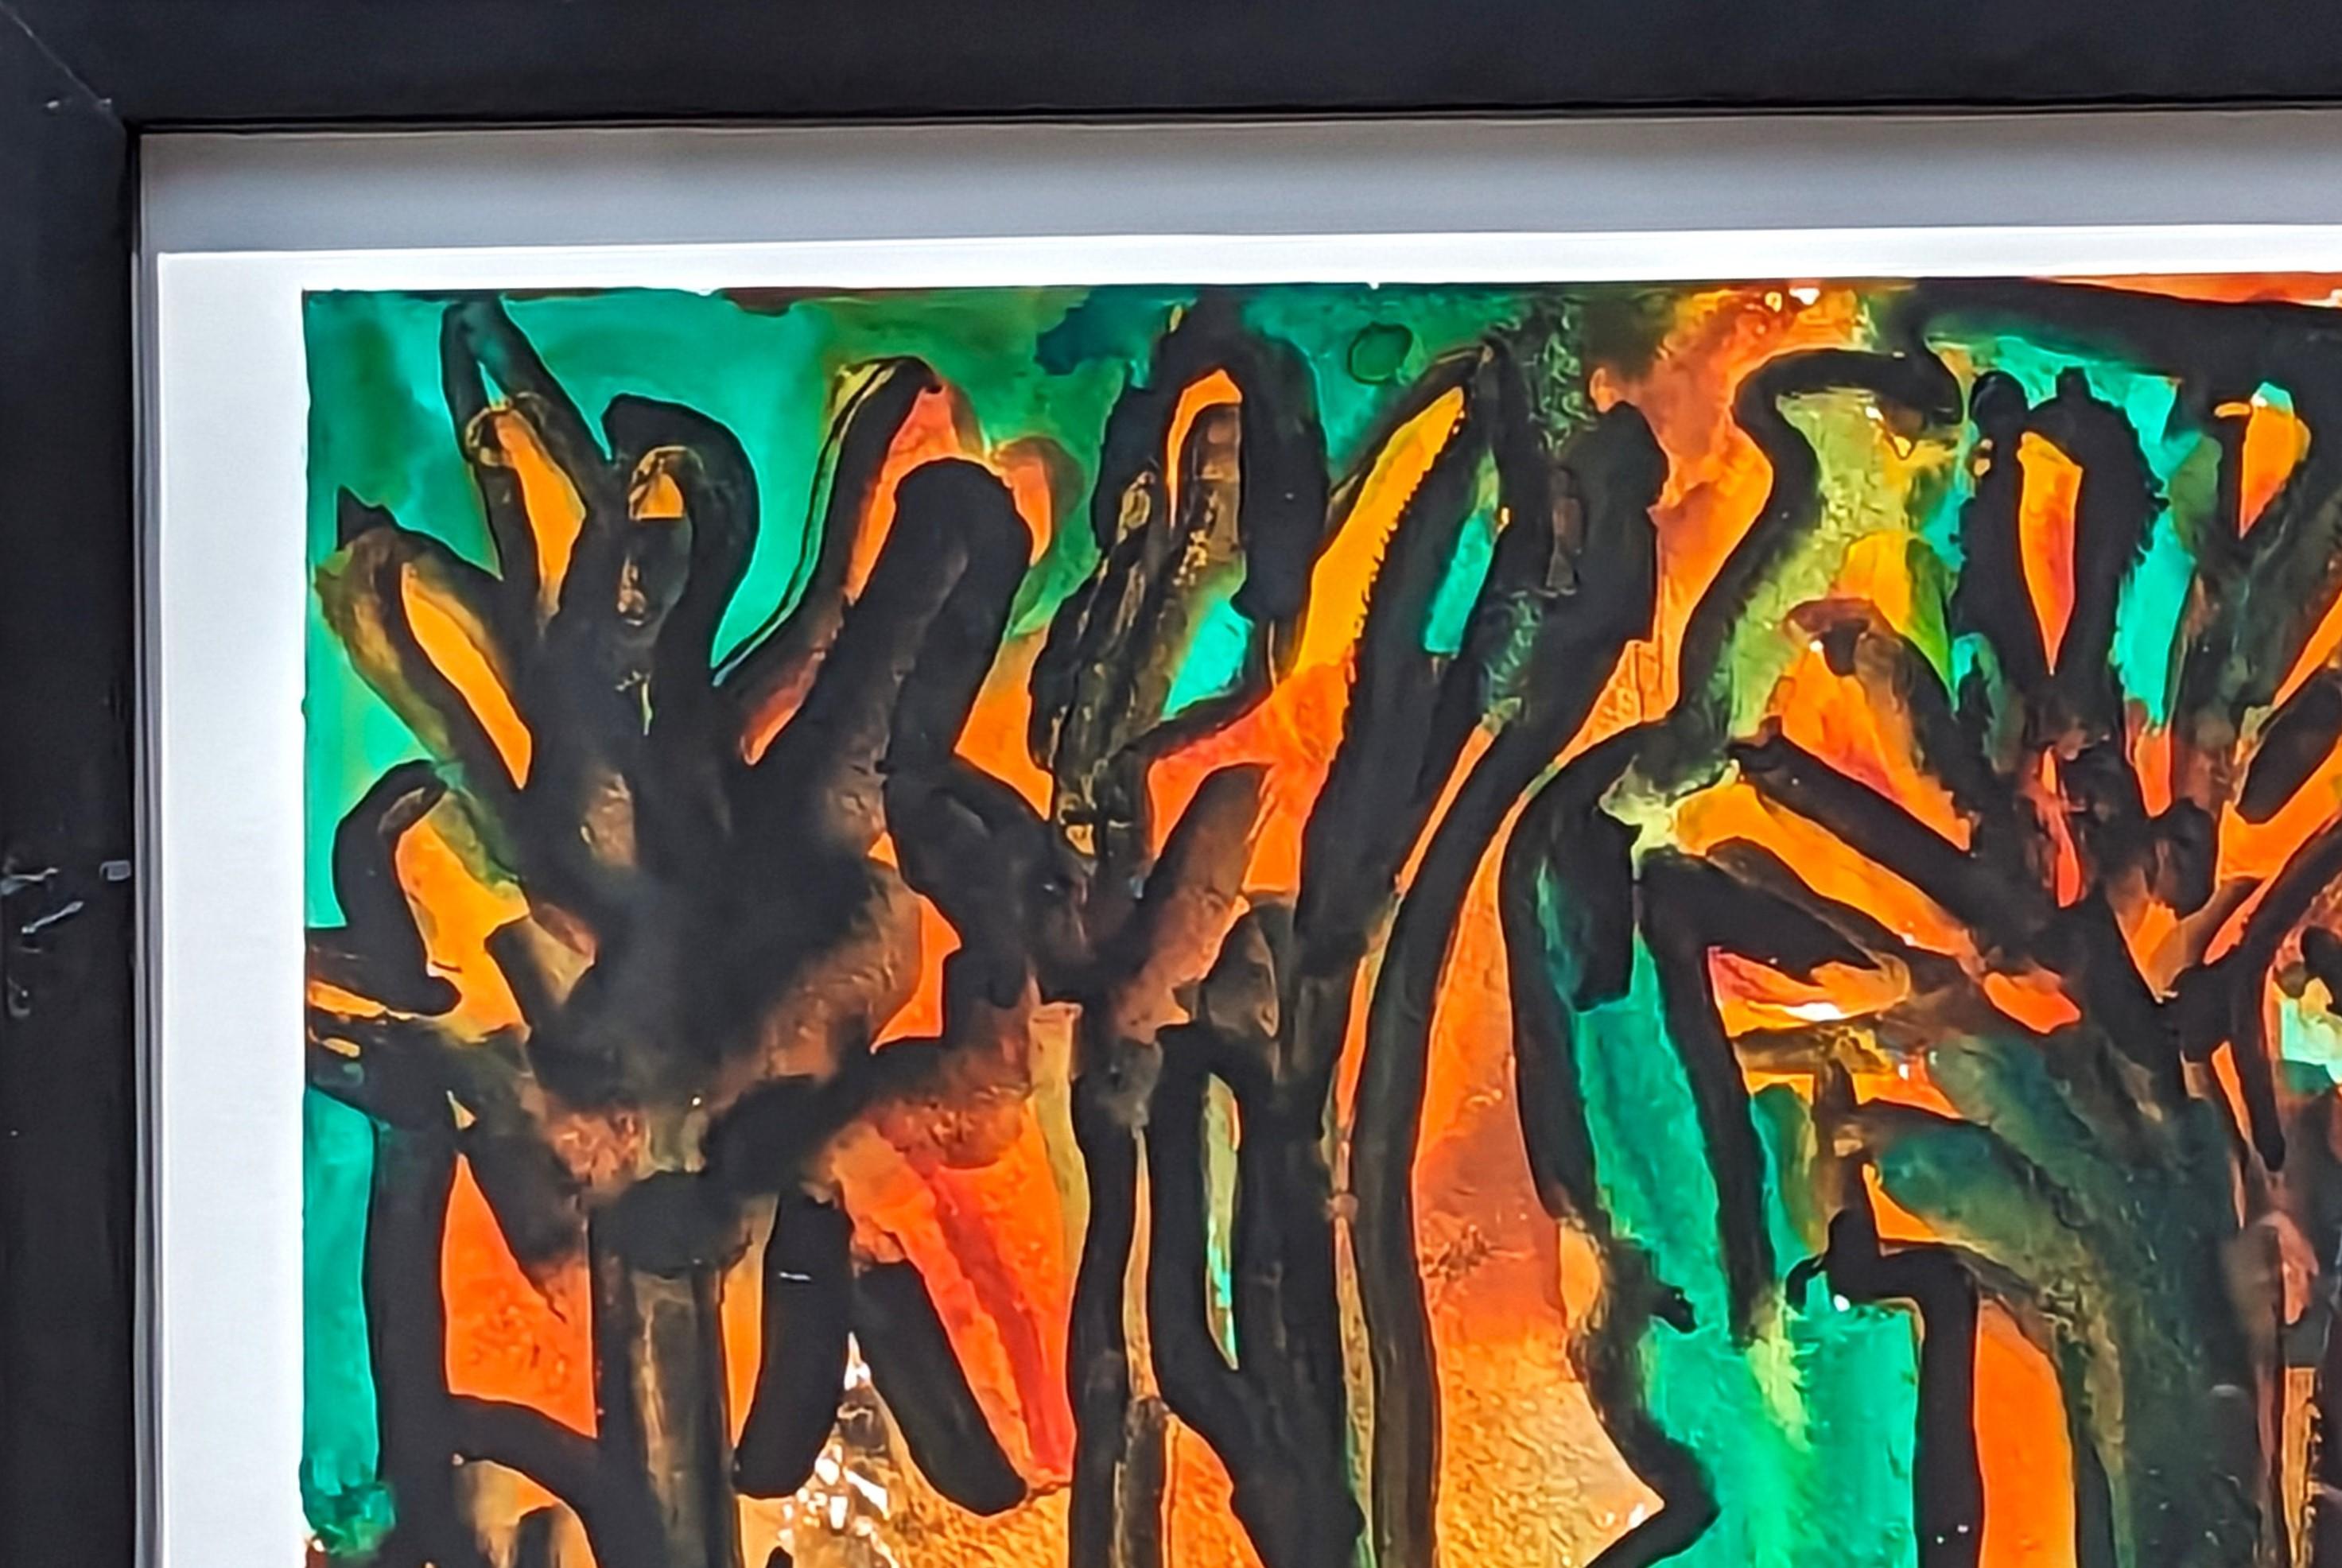 Modernes abstraktes Aquarell in Orange- und Grüntönen von Dick Wray, einem gebürtigen Houstoner. Das Werk zeigt geschwungene organische Formen in Grüntönen vor einem orangefarbenen Hintergrund. Signiert und datiert am unteren Rand der Vorderseite.